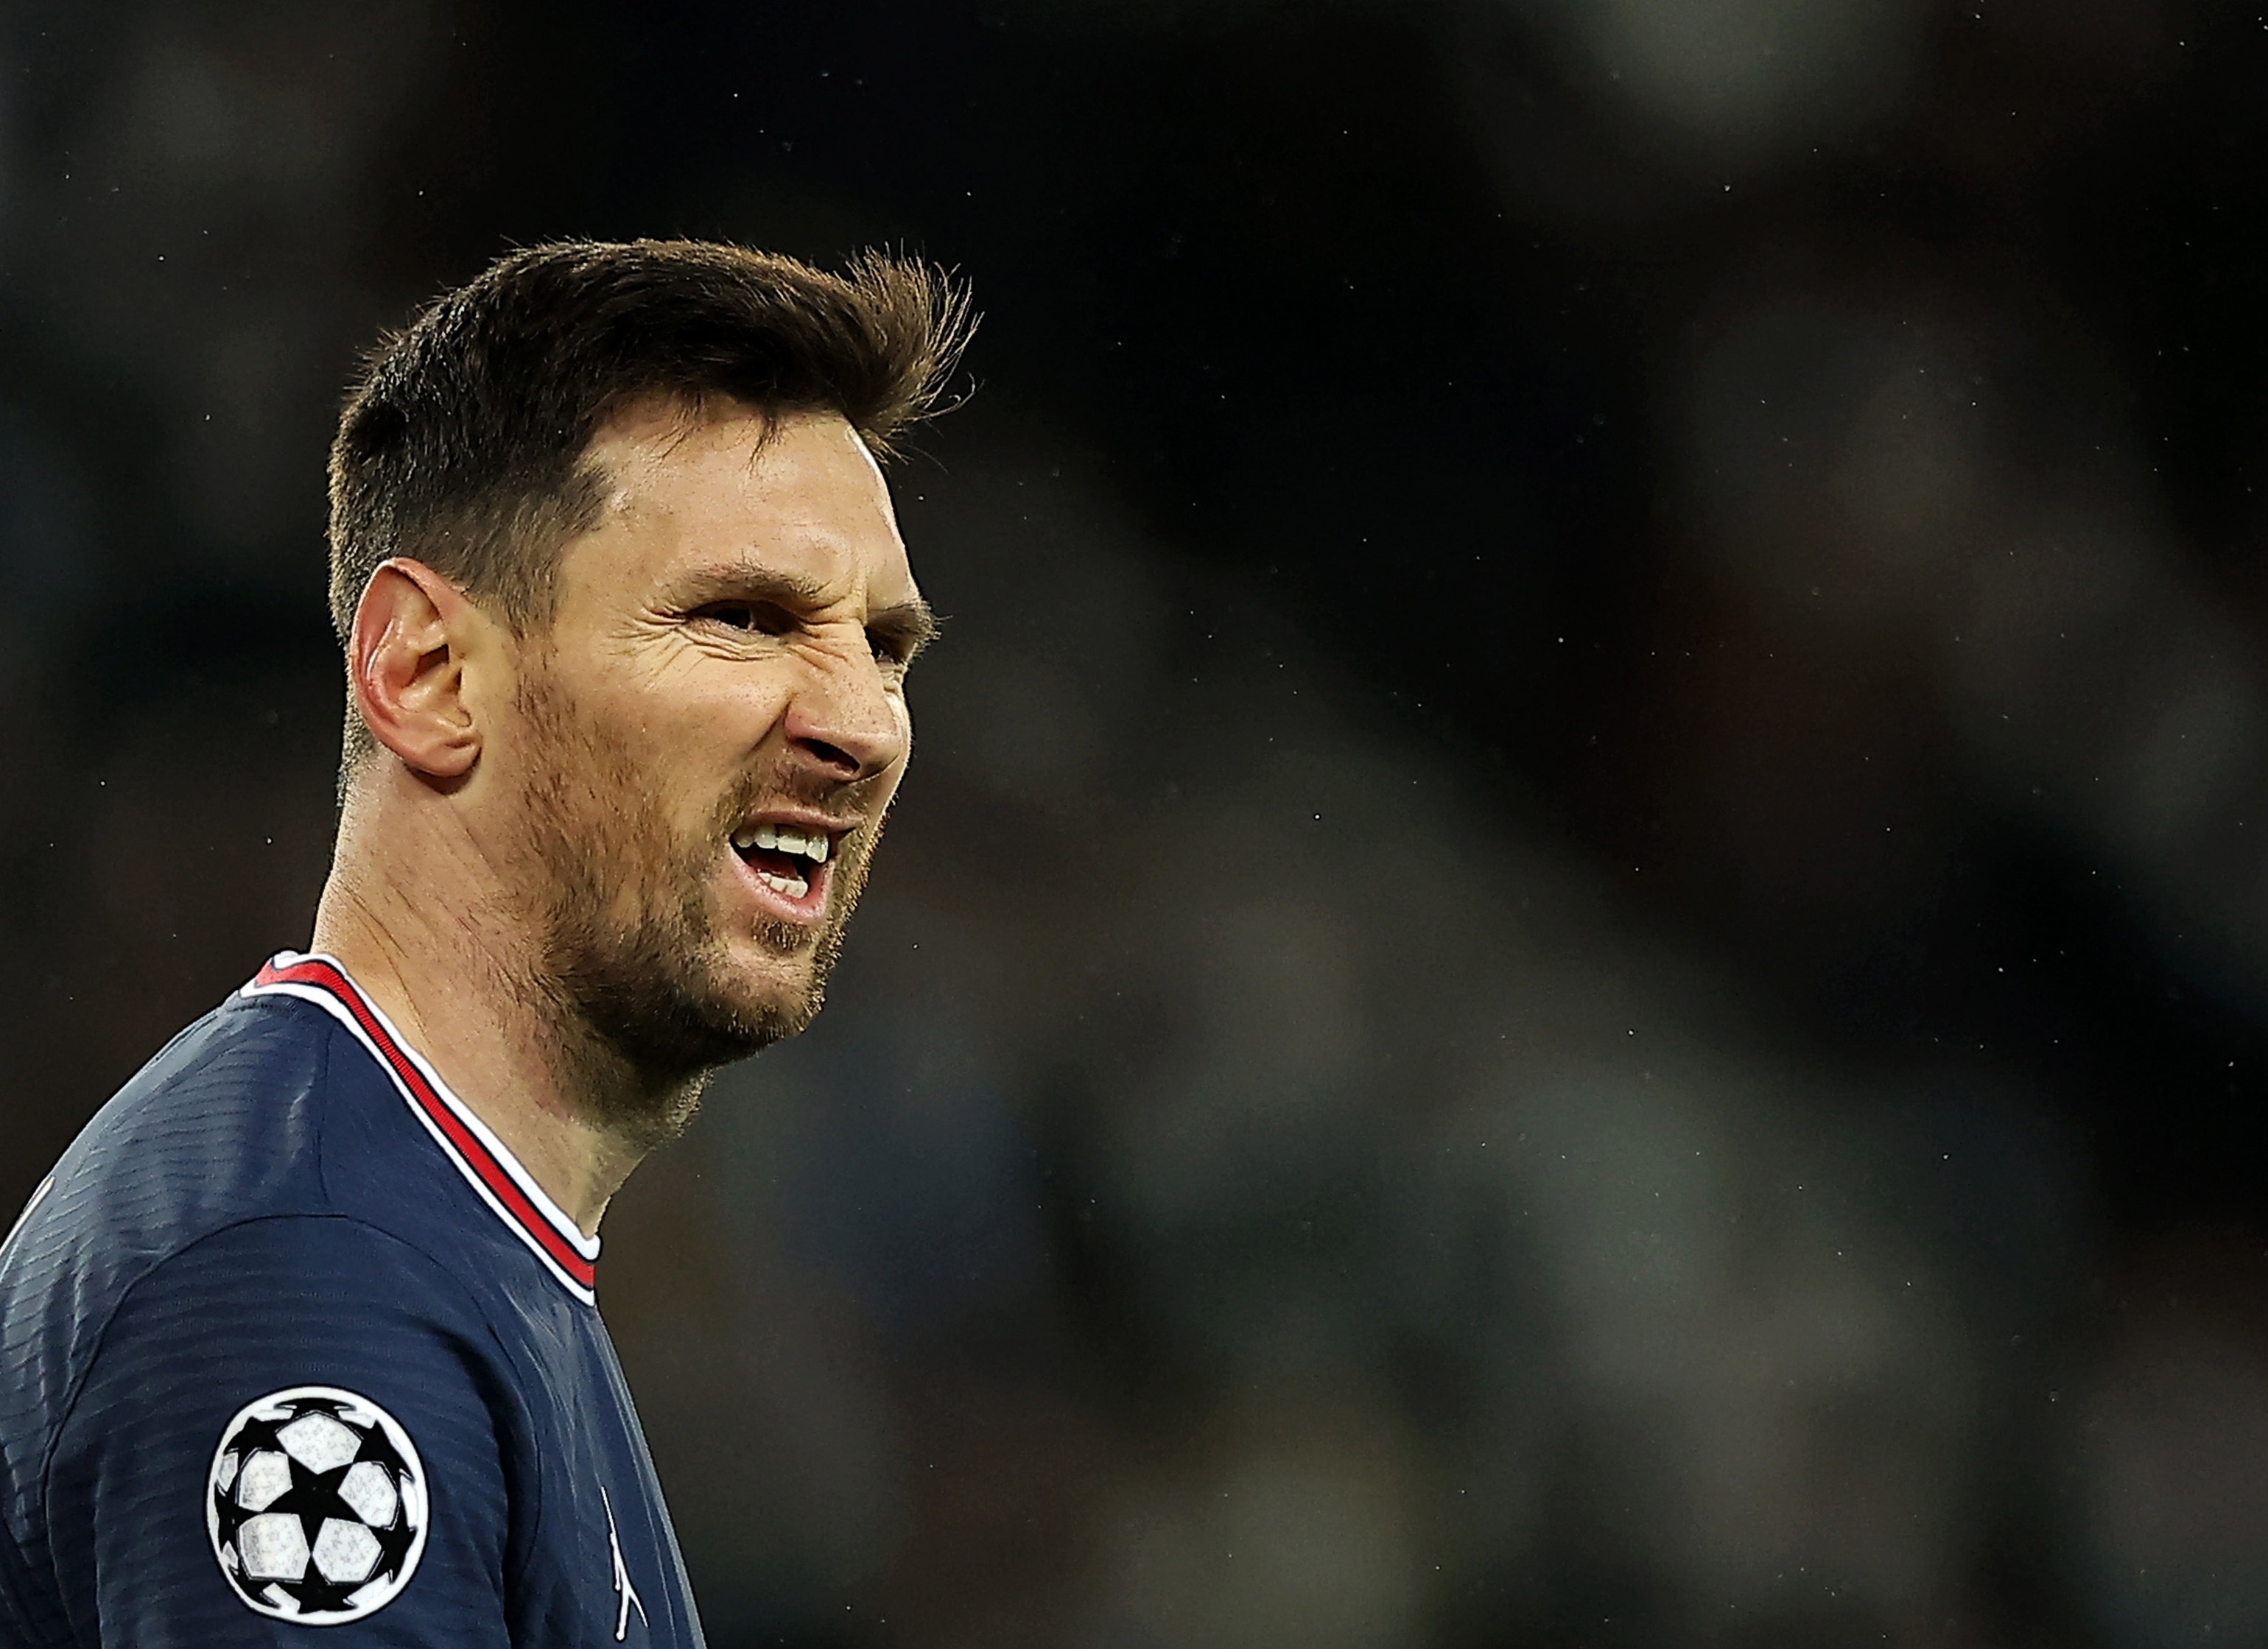 El jugador argentino del Paris Saint Germain, Lionel Messi, en una imagen de archivo. EFE/EPA/Ian Langsdon
